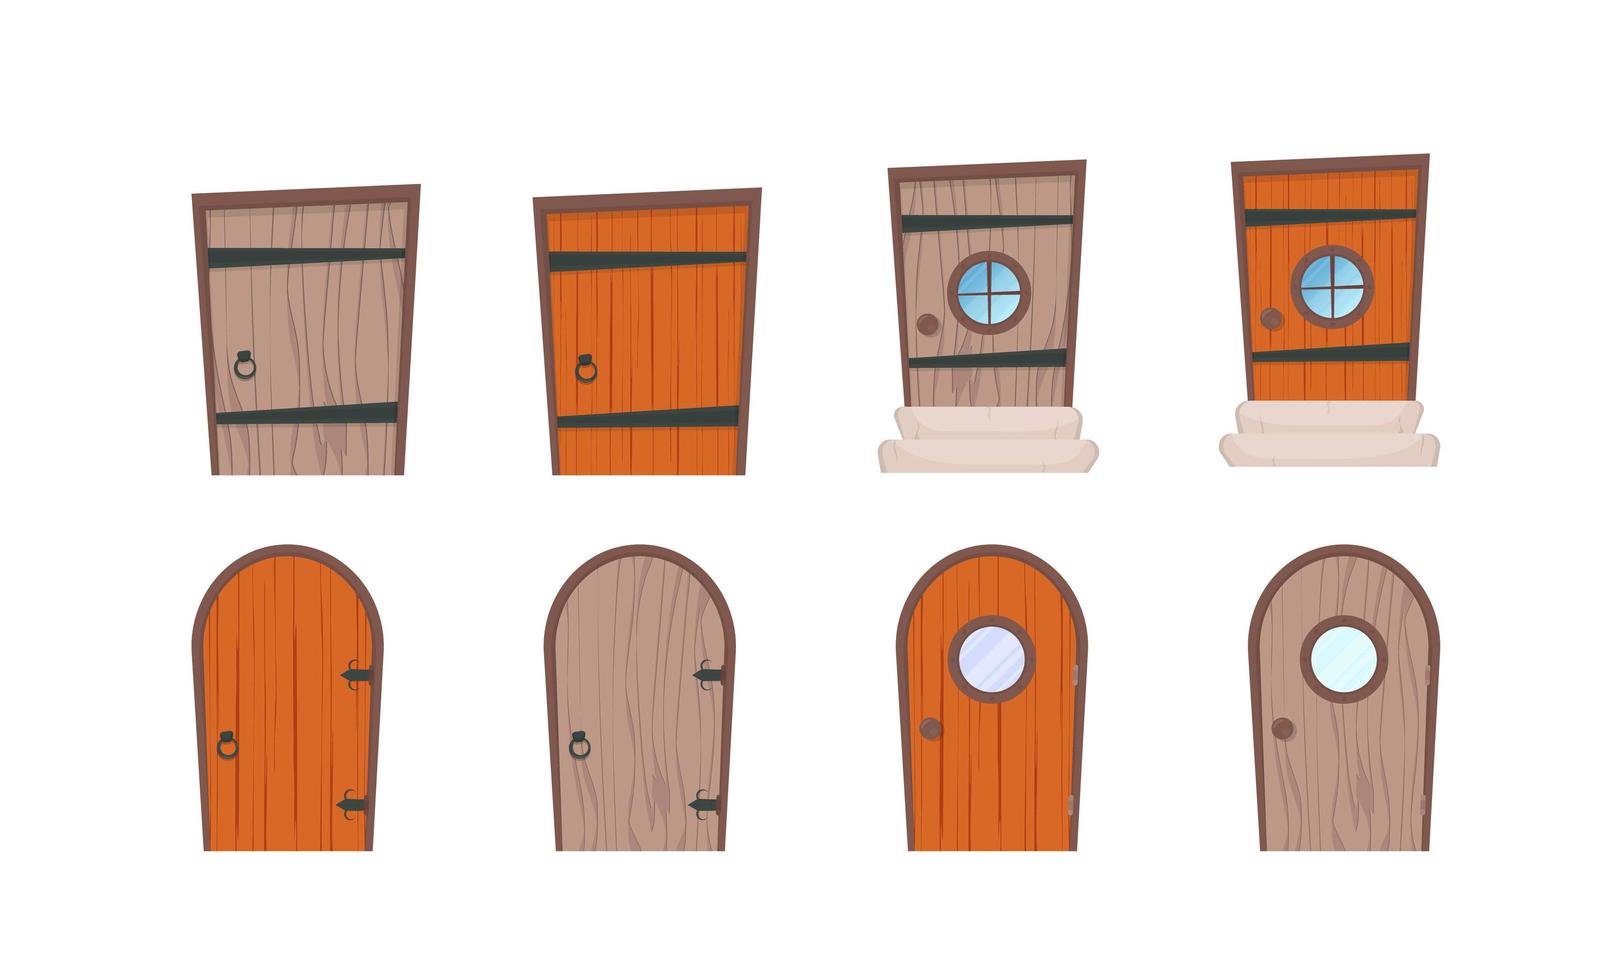 Reihe von Holztüren im Cartoon-Stil. Elemente für die Gestaltung von Spielen oder Häusern. isoliert. Vektor-Illustration. vektor